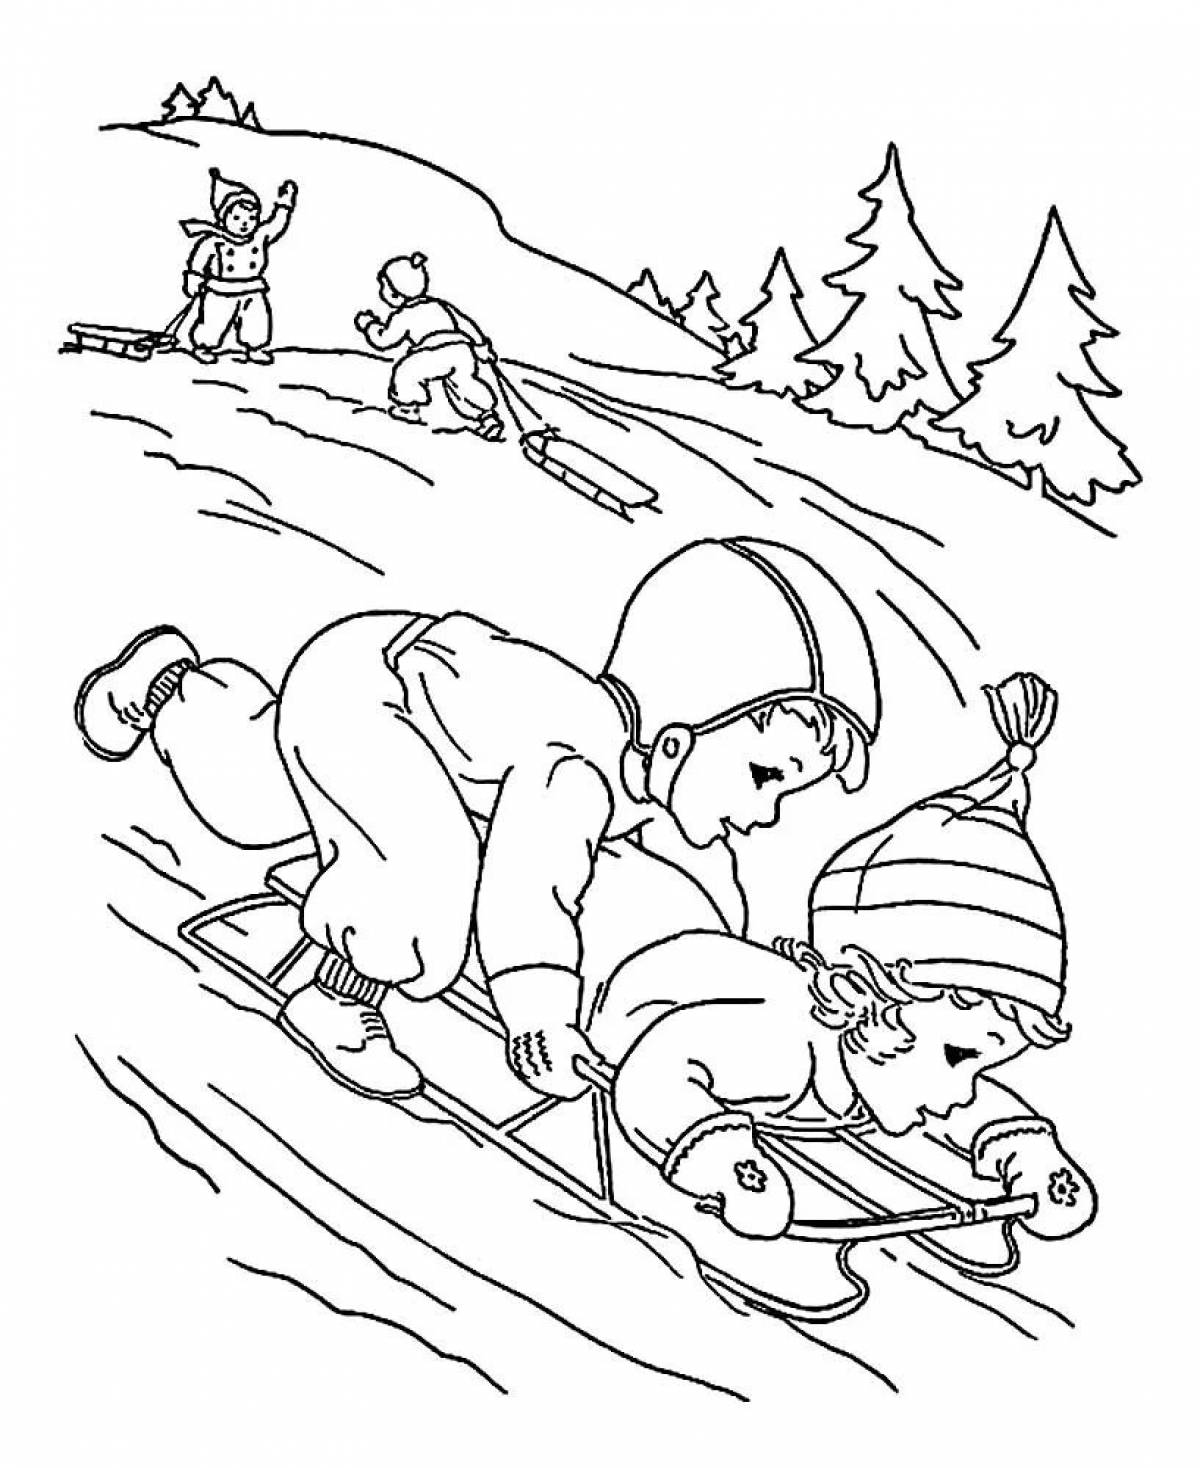 Children sledding down slide #7